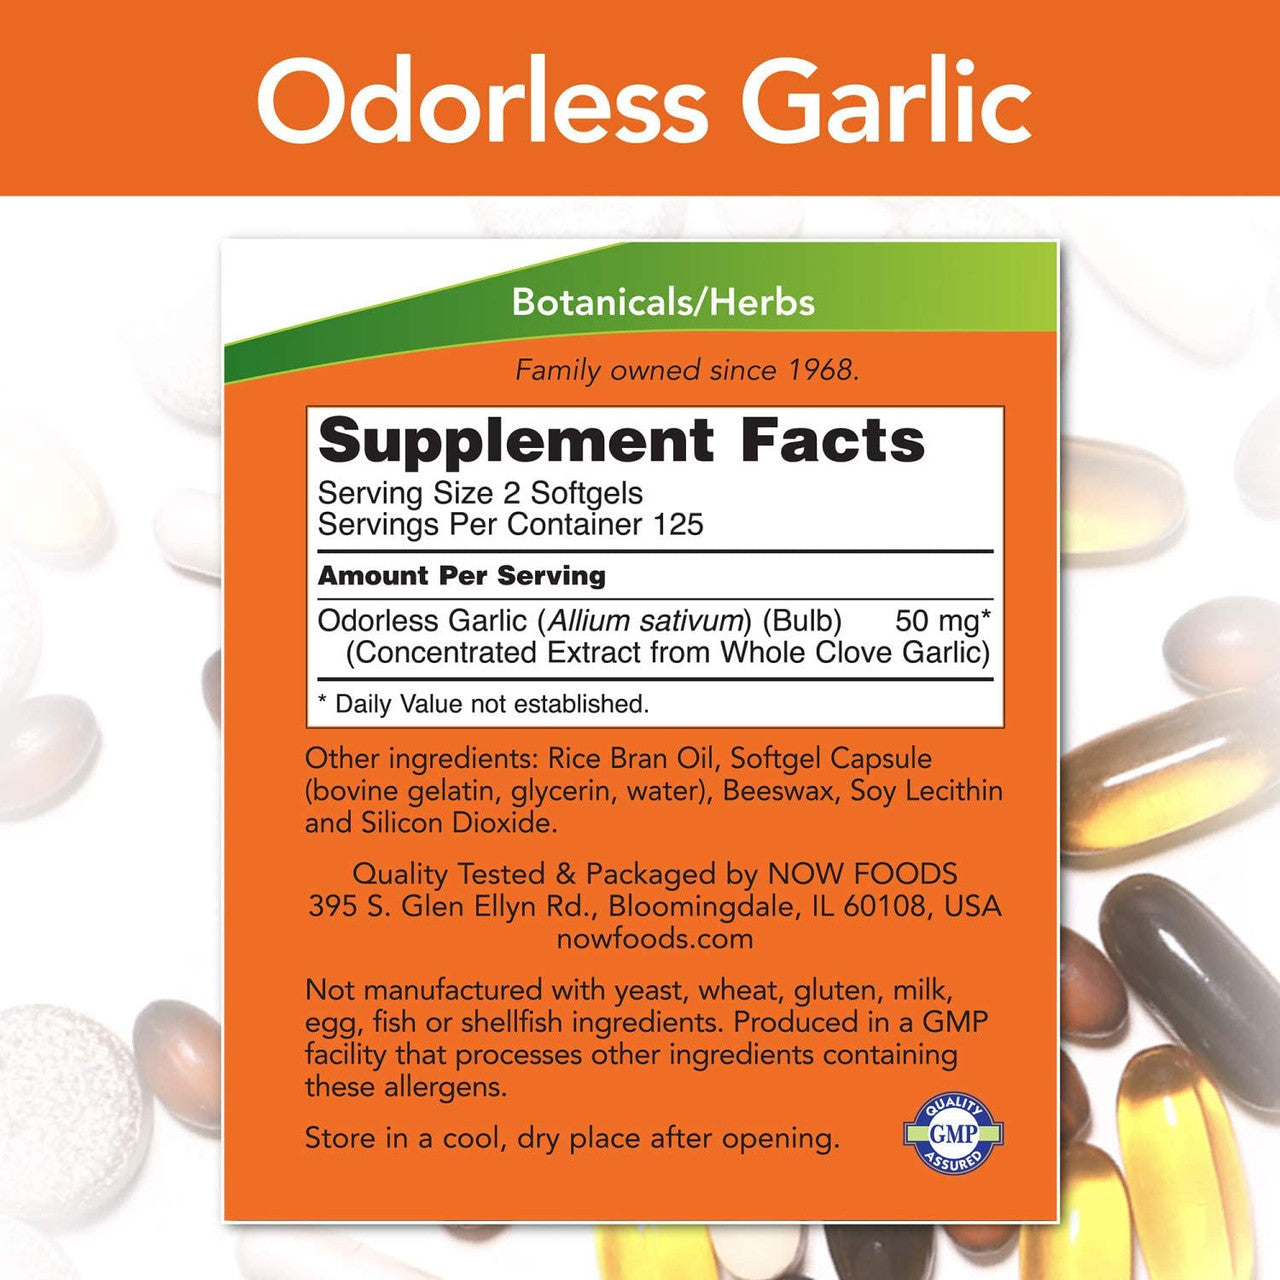 Now Odorless Garlic supplement facts